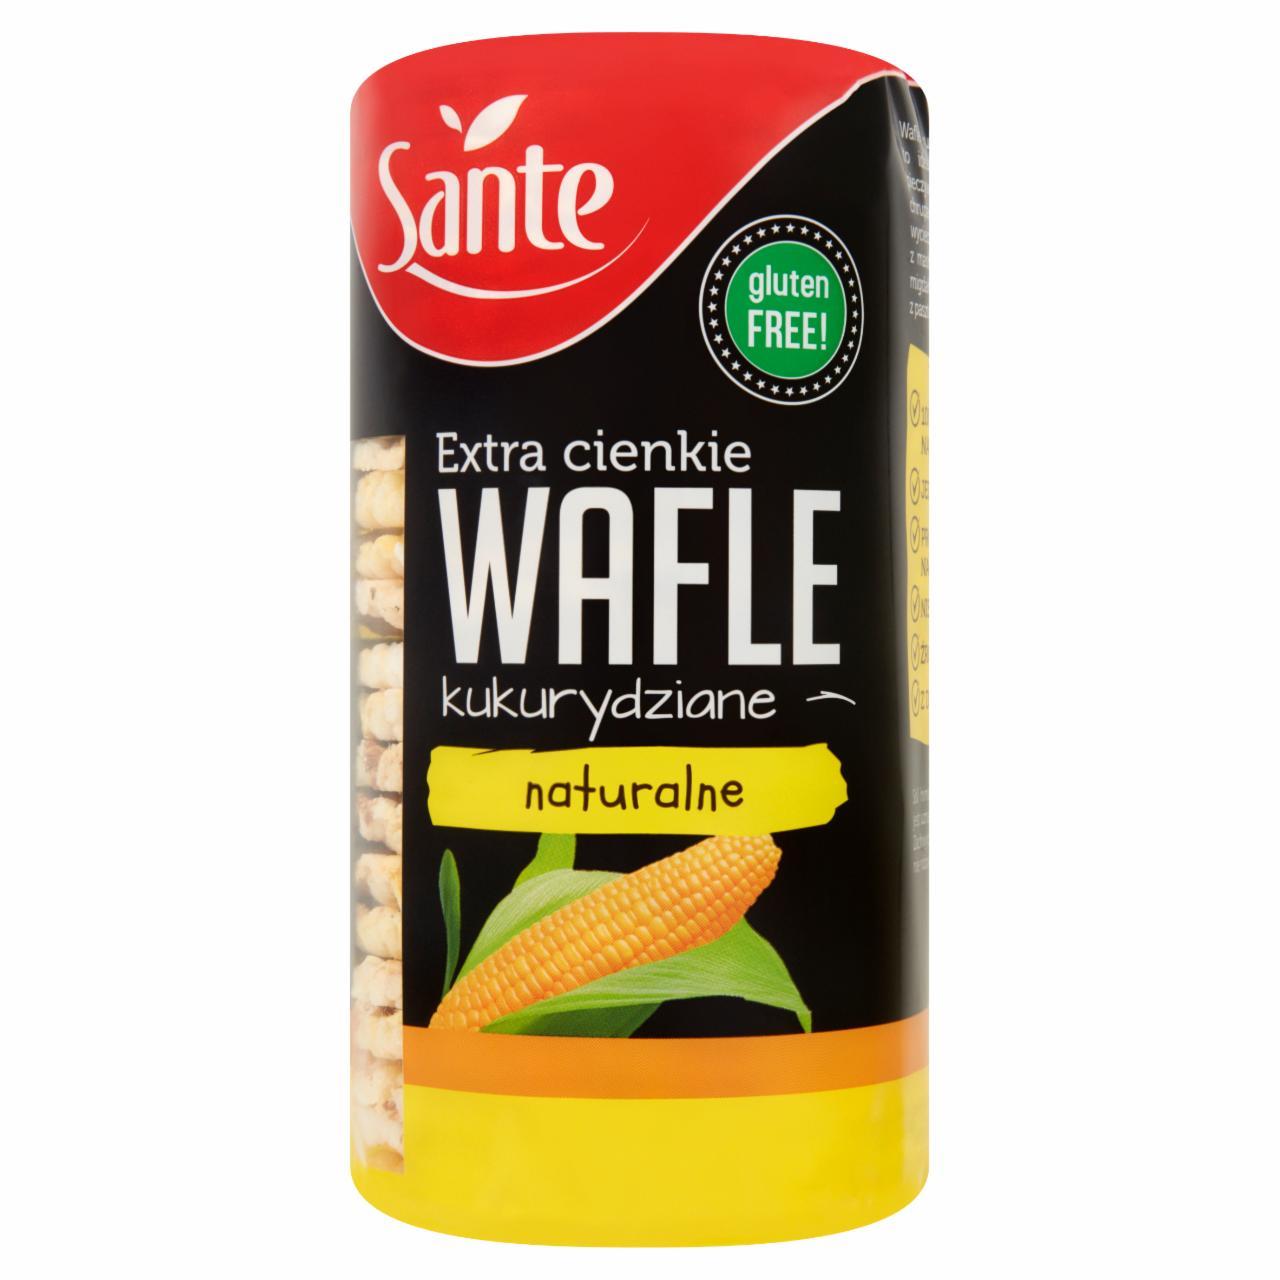 Zdjęcia - Sante Extra cienkie wafle kukurydziane naturalne 120 g